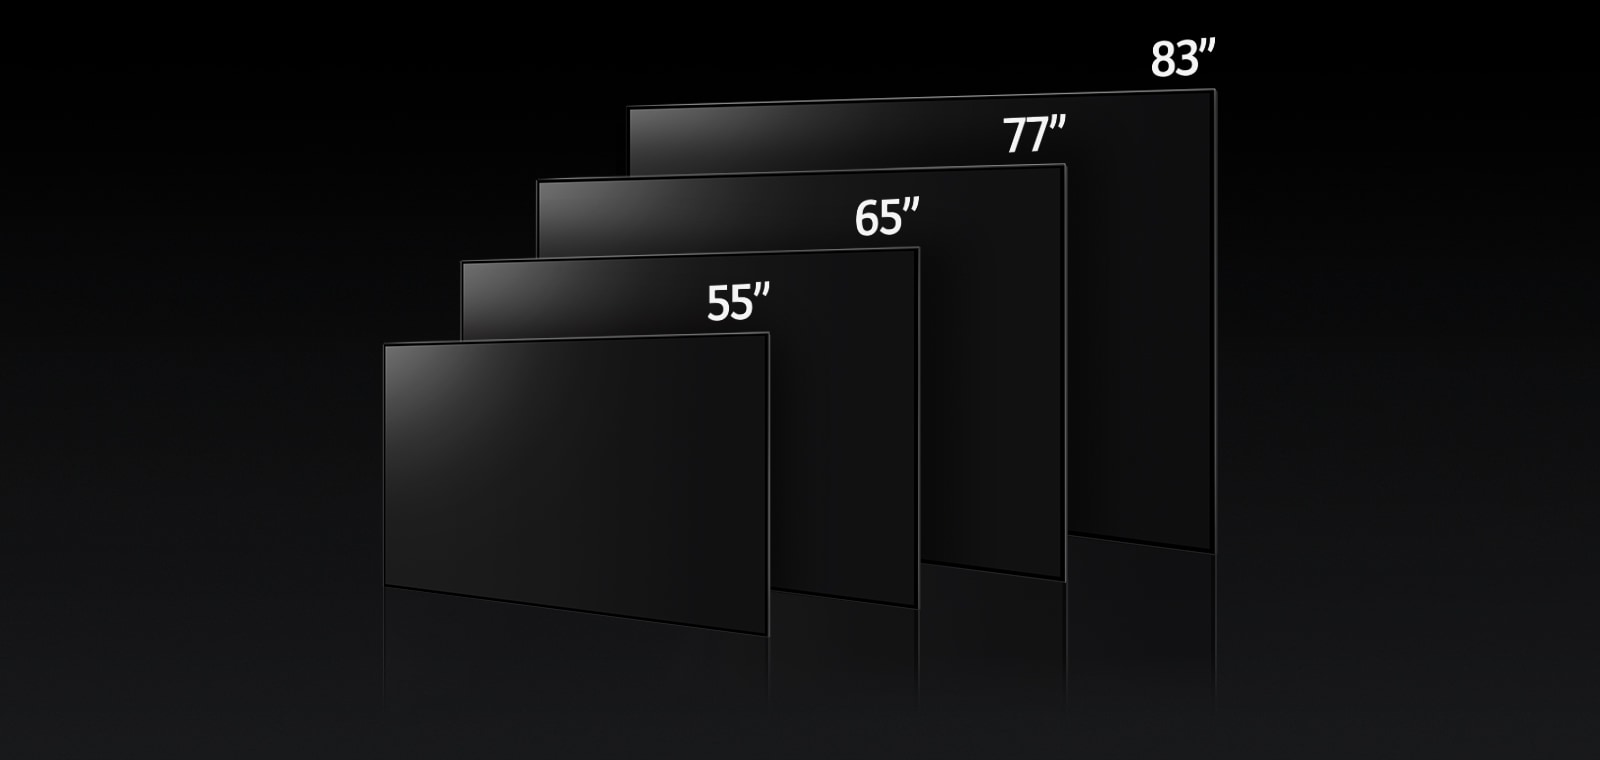 Slika, ki primerja različne velikosti televizorja LG OLED G3, prikazuje 55", 65", 77" in 83".